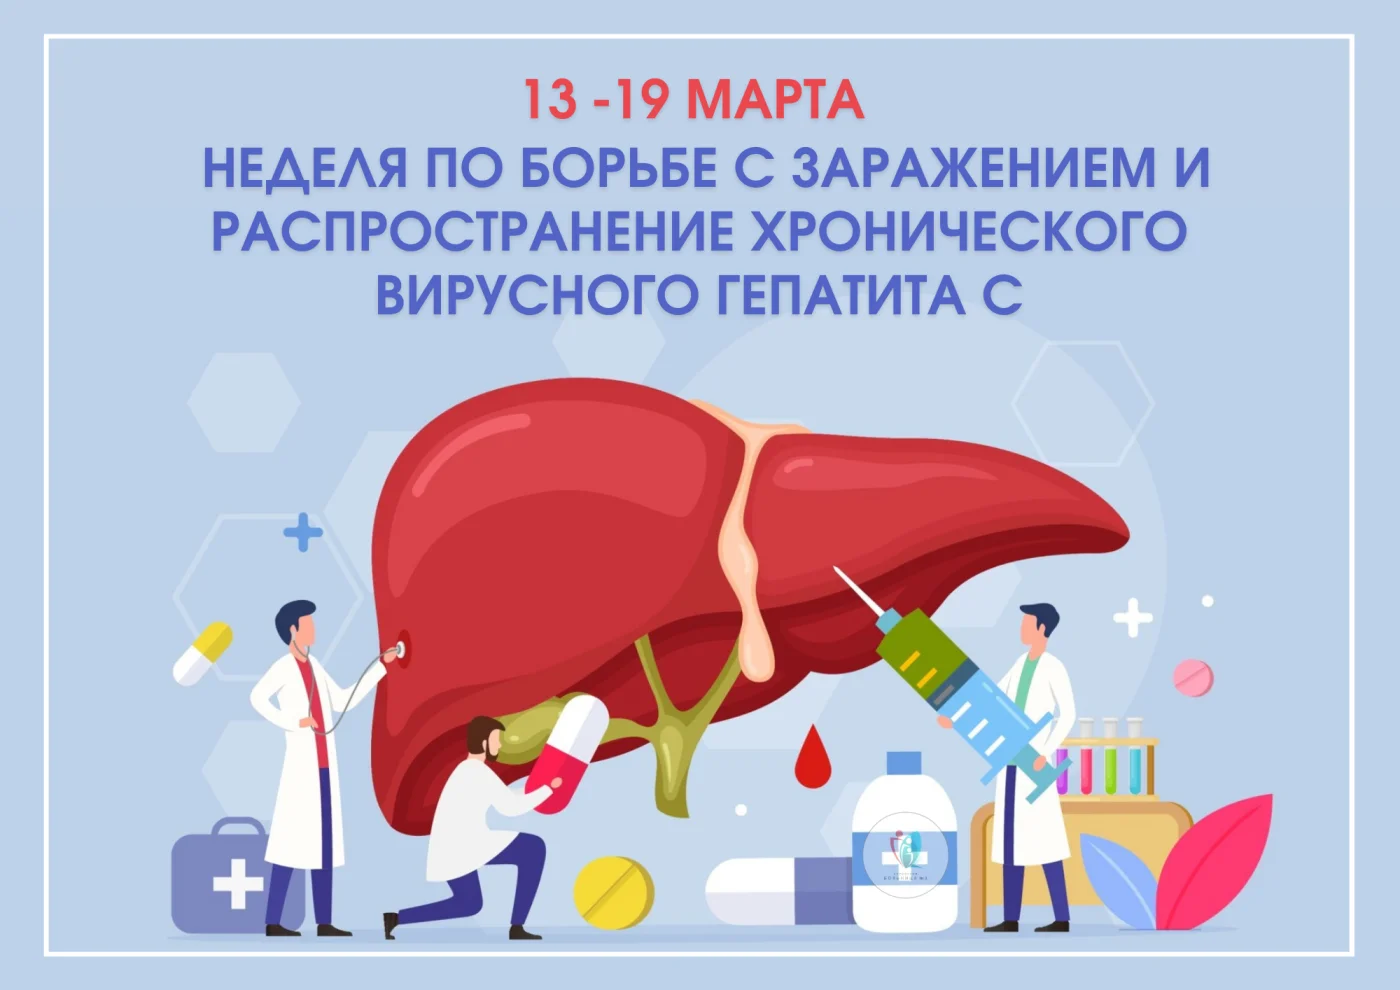 13-19 марта в России проходит неделя по борьбе с заражением и распространением хронического вирусного гепатита С